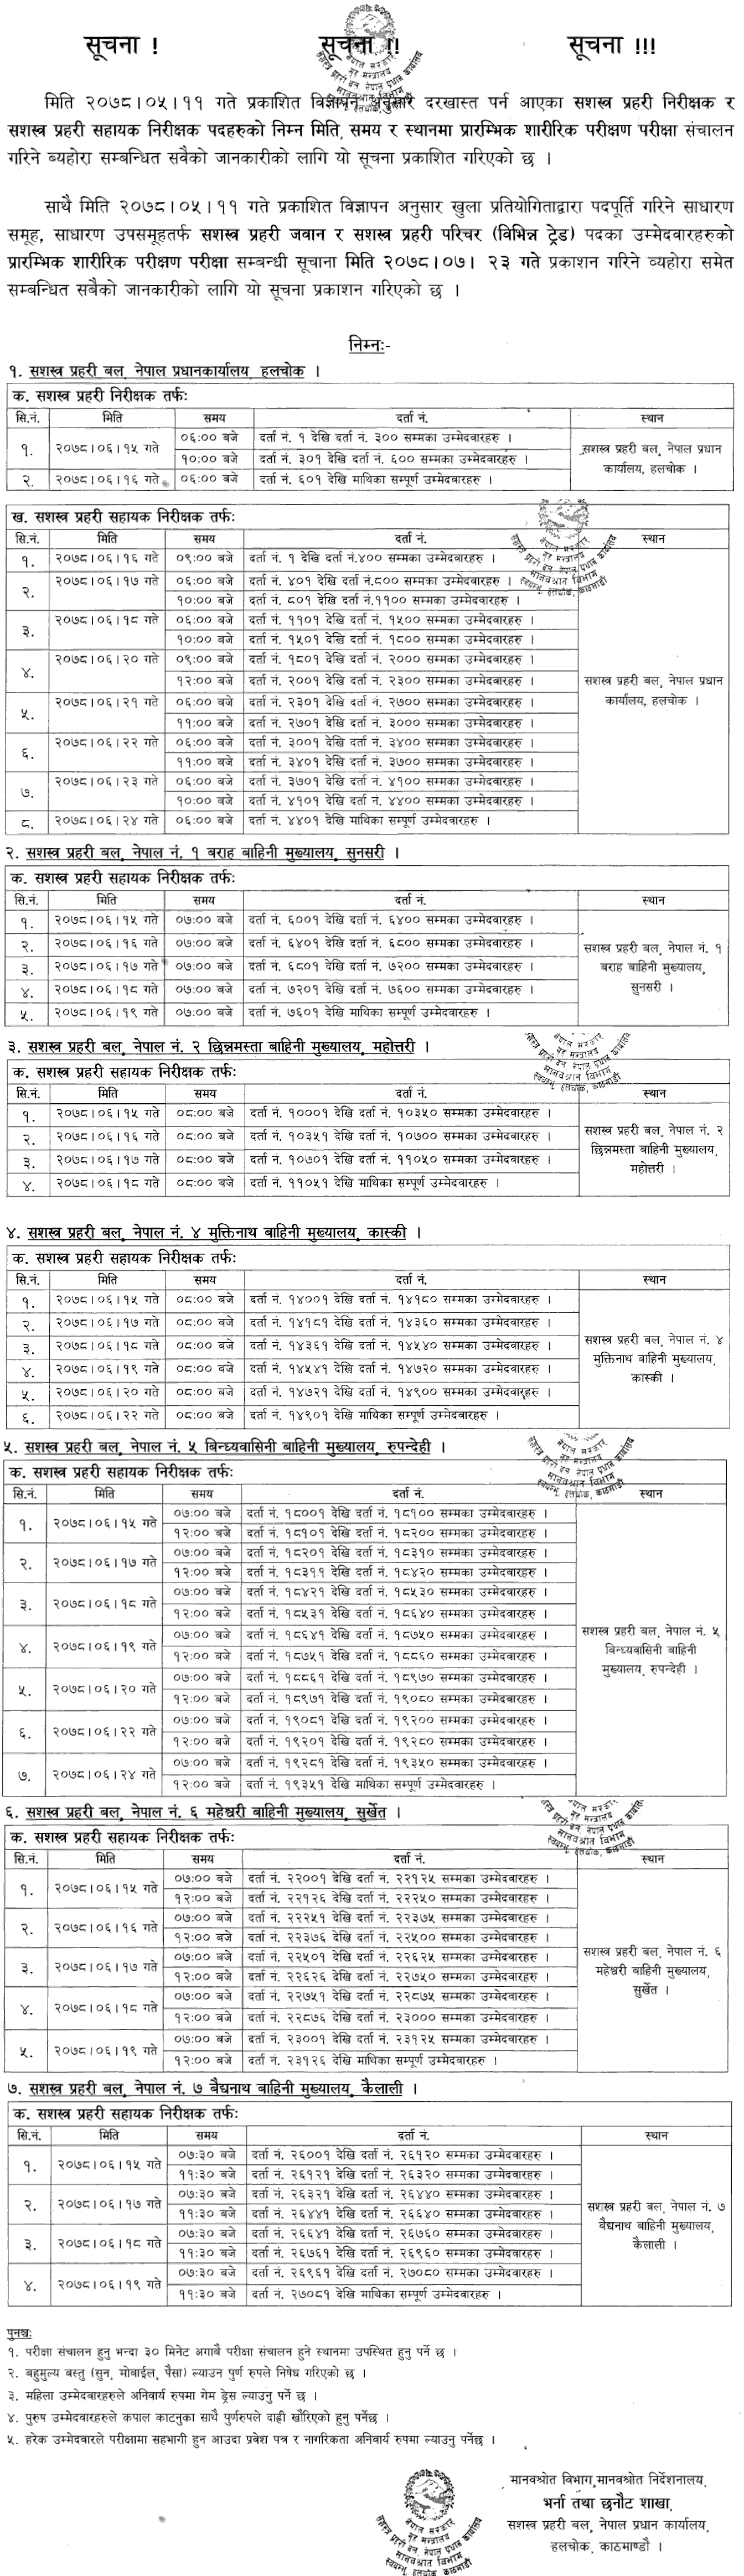 APF Nepal (Sashastra Prahari) Inspector, ASI and Jawan Physical Exam Schedule